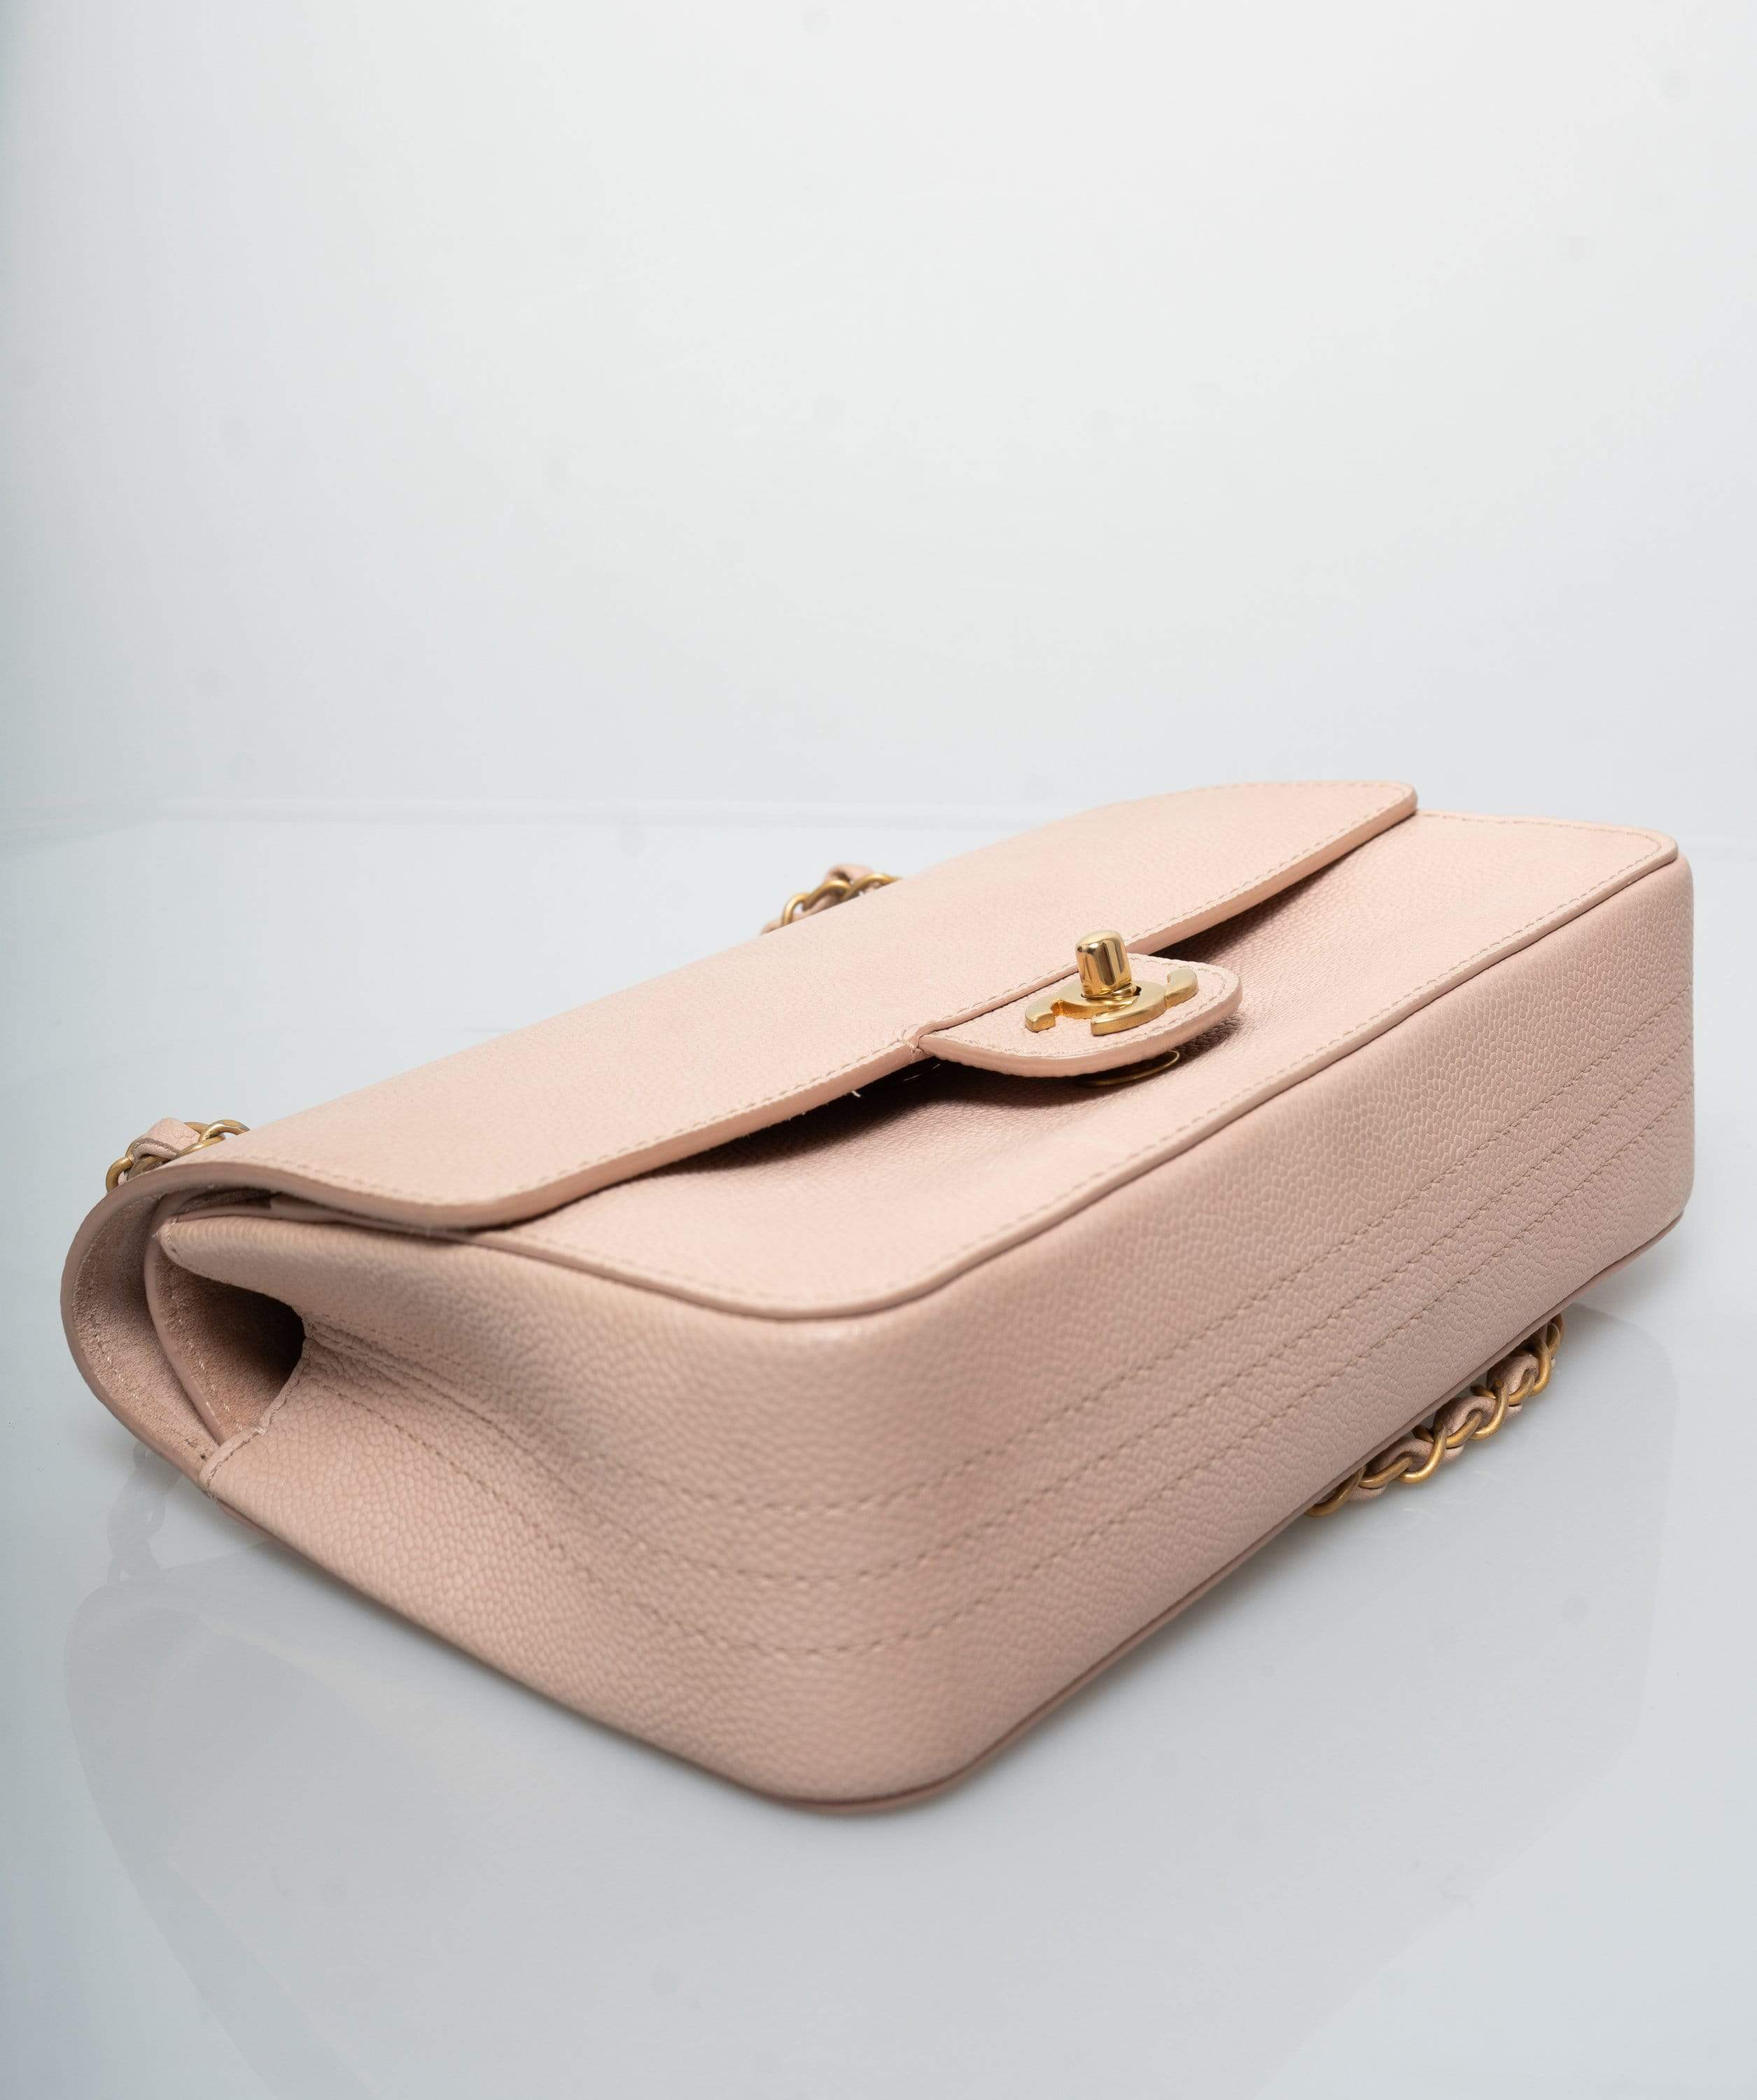 Chanel Chanel Pink Caviar Medium Classic Flap Bag GHW  - AGL1392